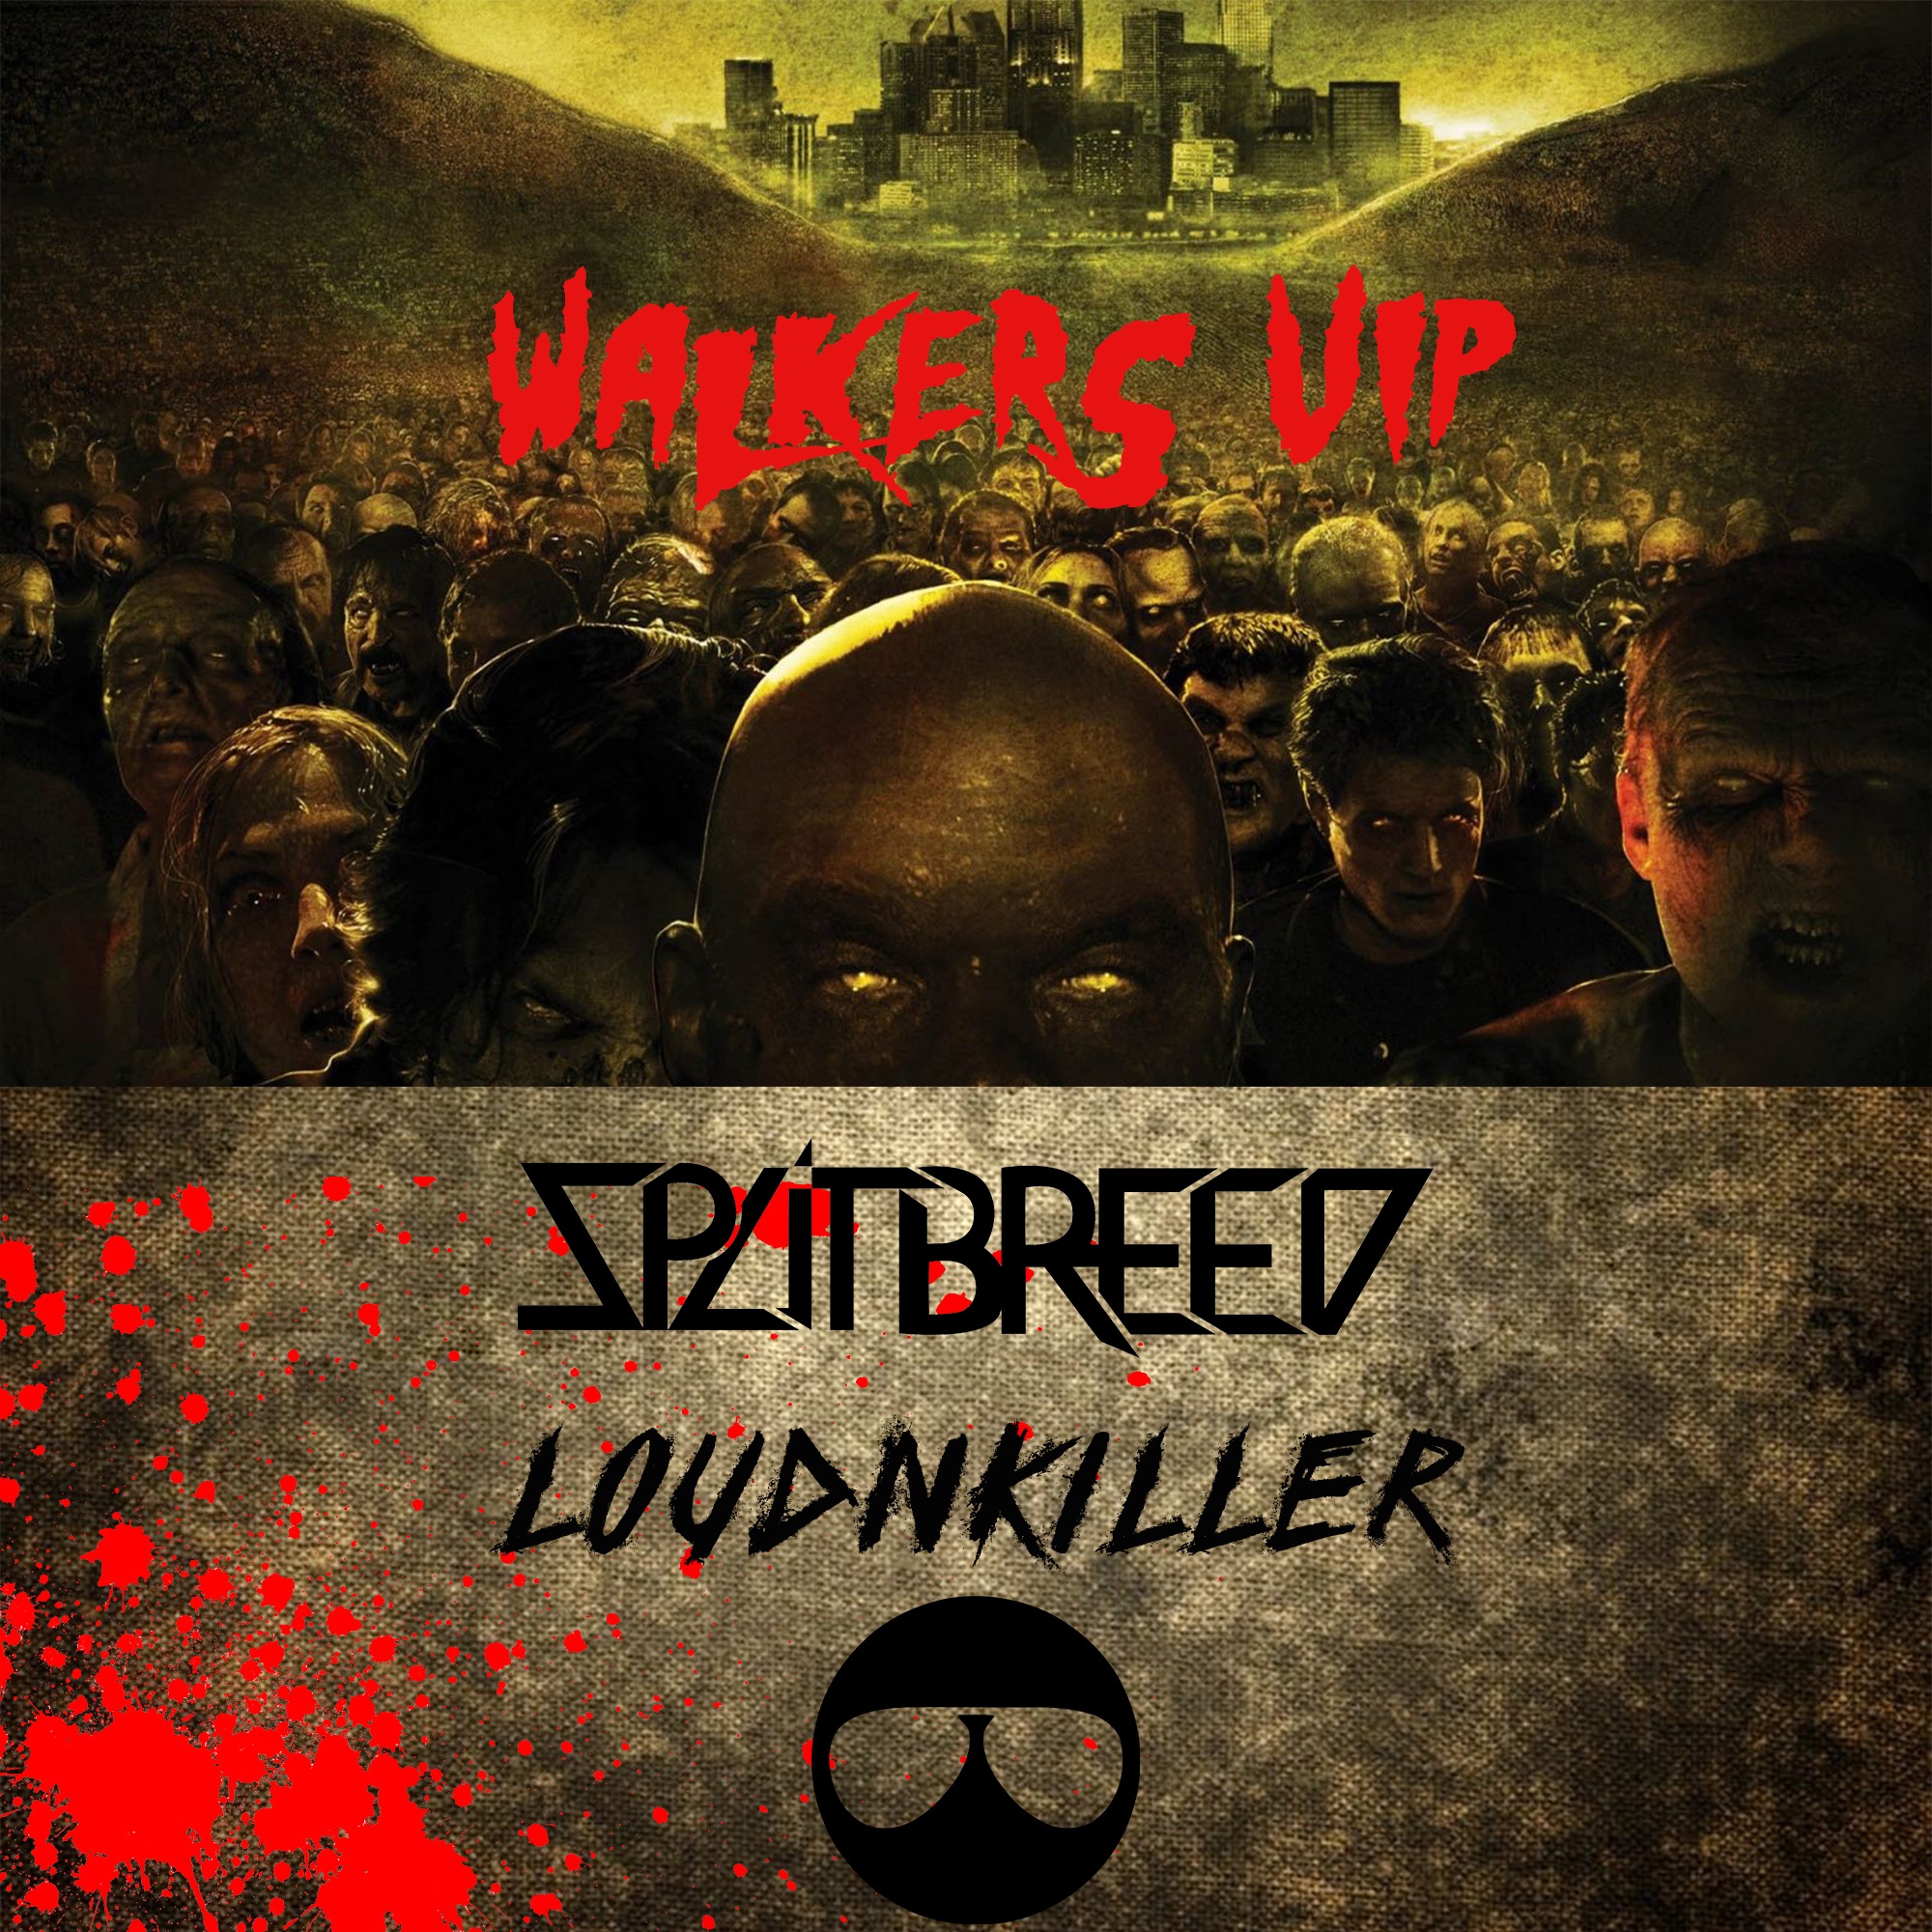 Descargar SPLITBREED & LOUD N' KILLER - WALKERS (VIP)